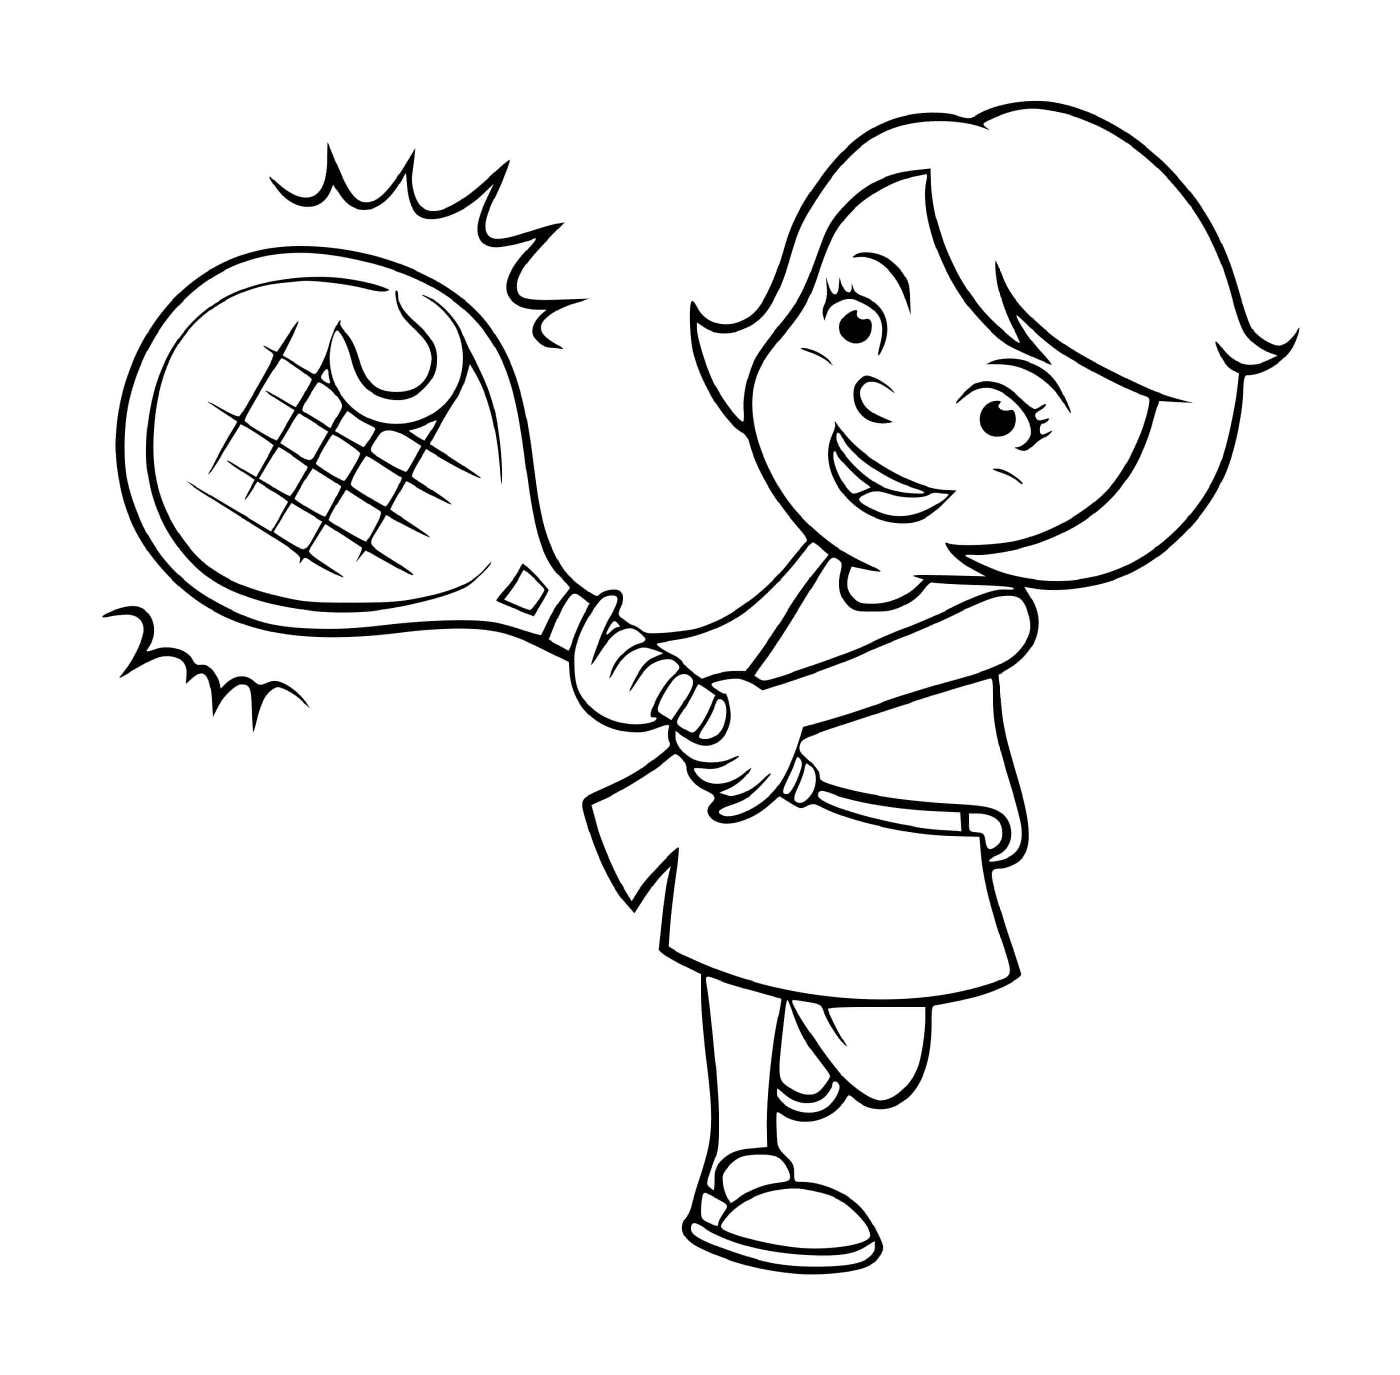   Une fille joue au tennis 